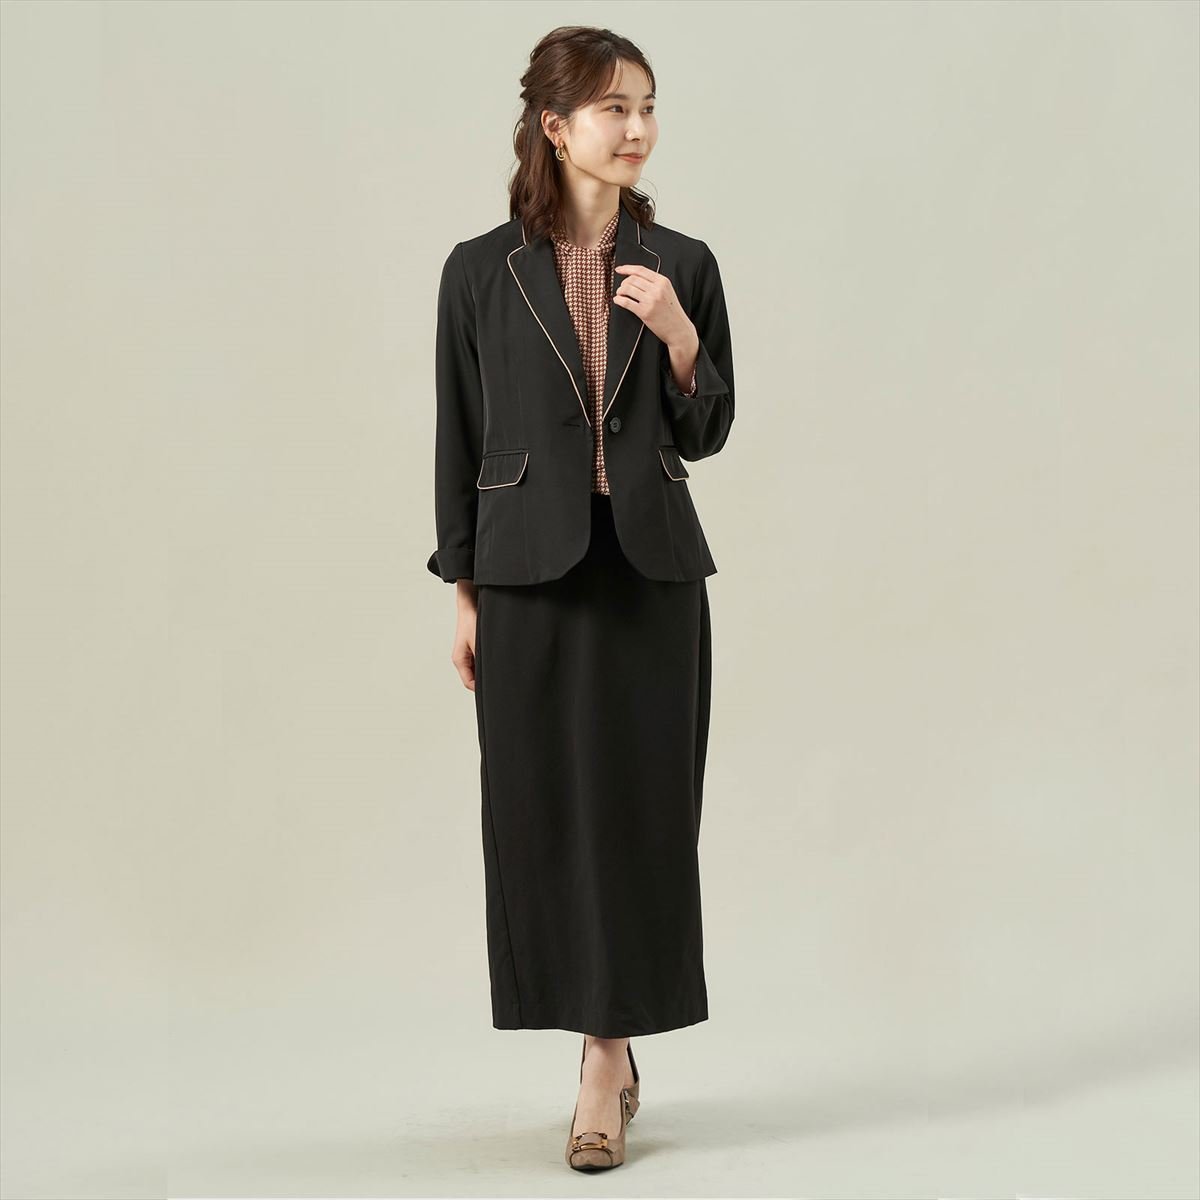 TOKYO SHIRTS パイピングジャケット ブラック トーキョーシャツ スーツ・フォーマル スーツジャケット ブラック【送料無料】